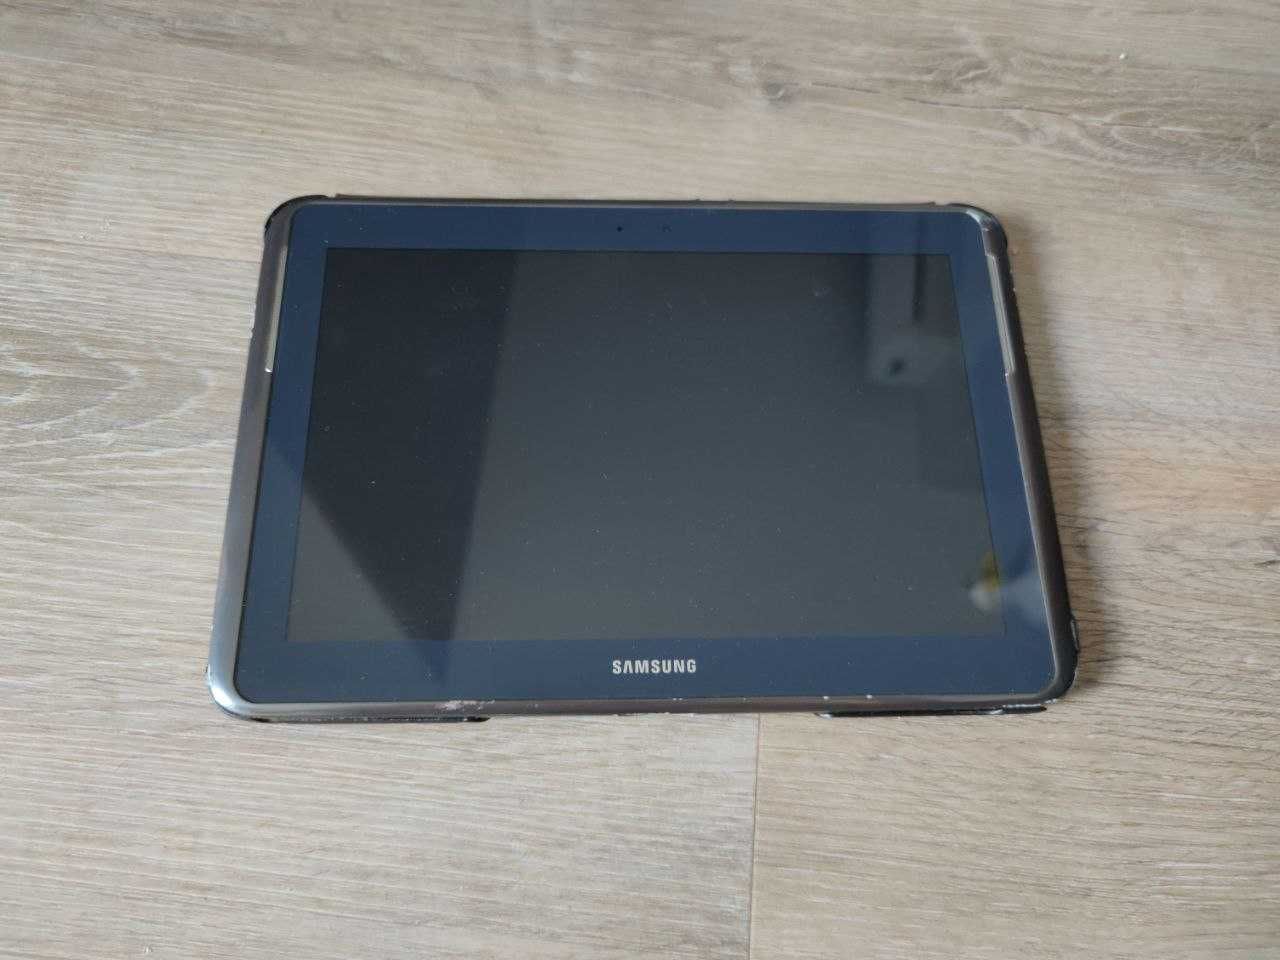 Samsung Tablet 10.1 " cali note 10.1 nie sprawny